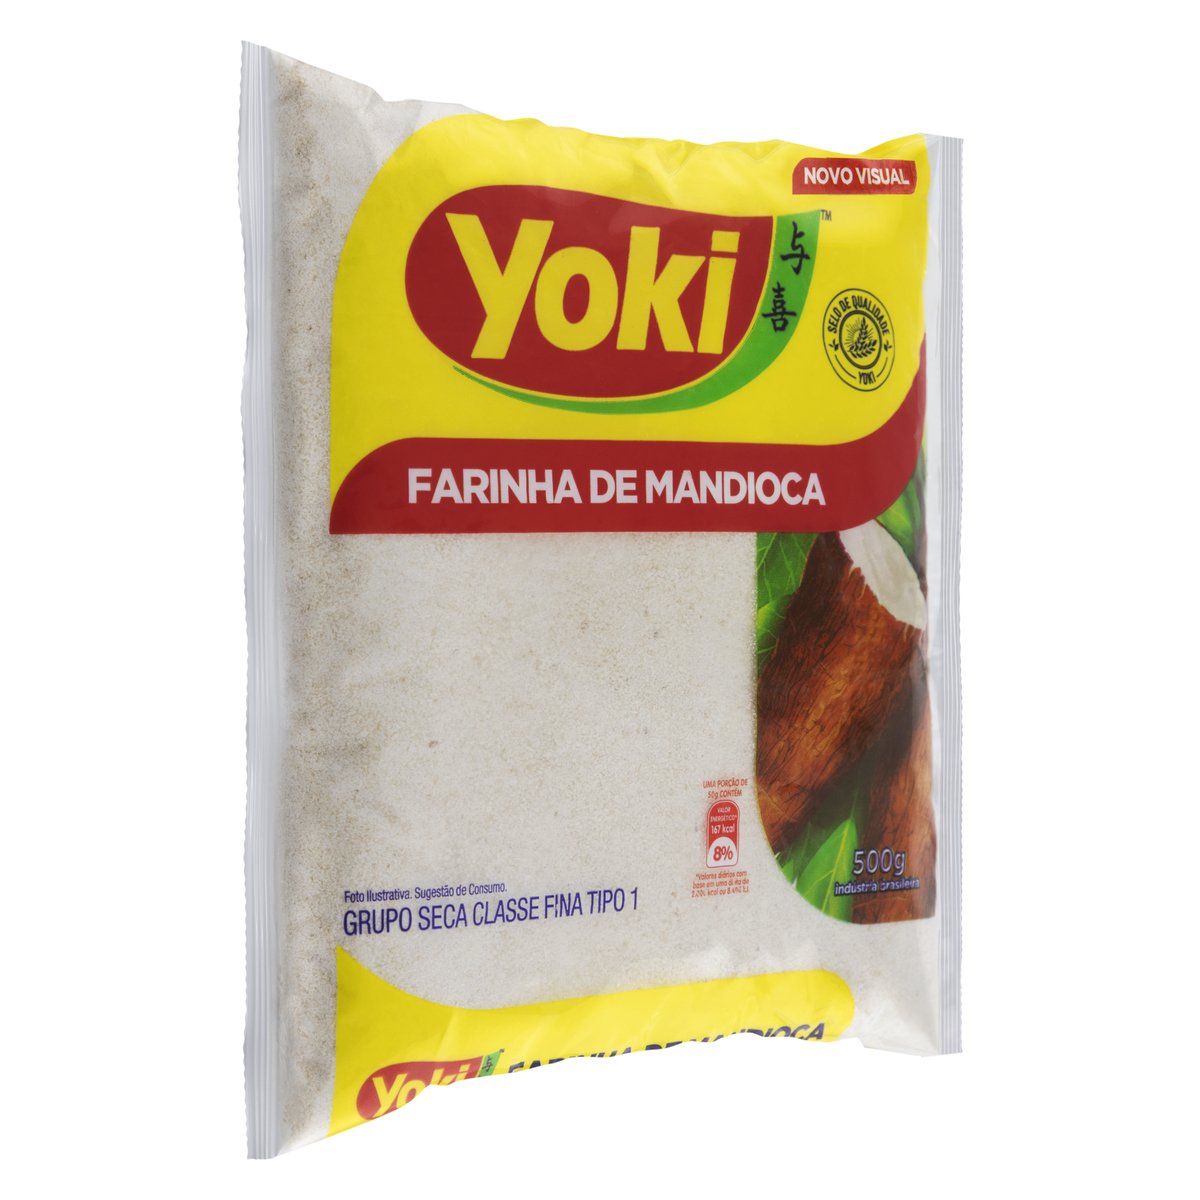 Farinha de Mandioca Crua YOKI Pacote 500g